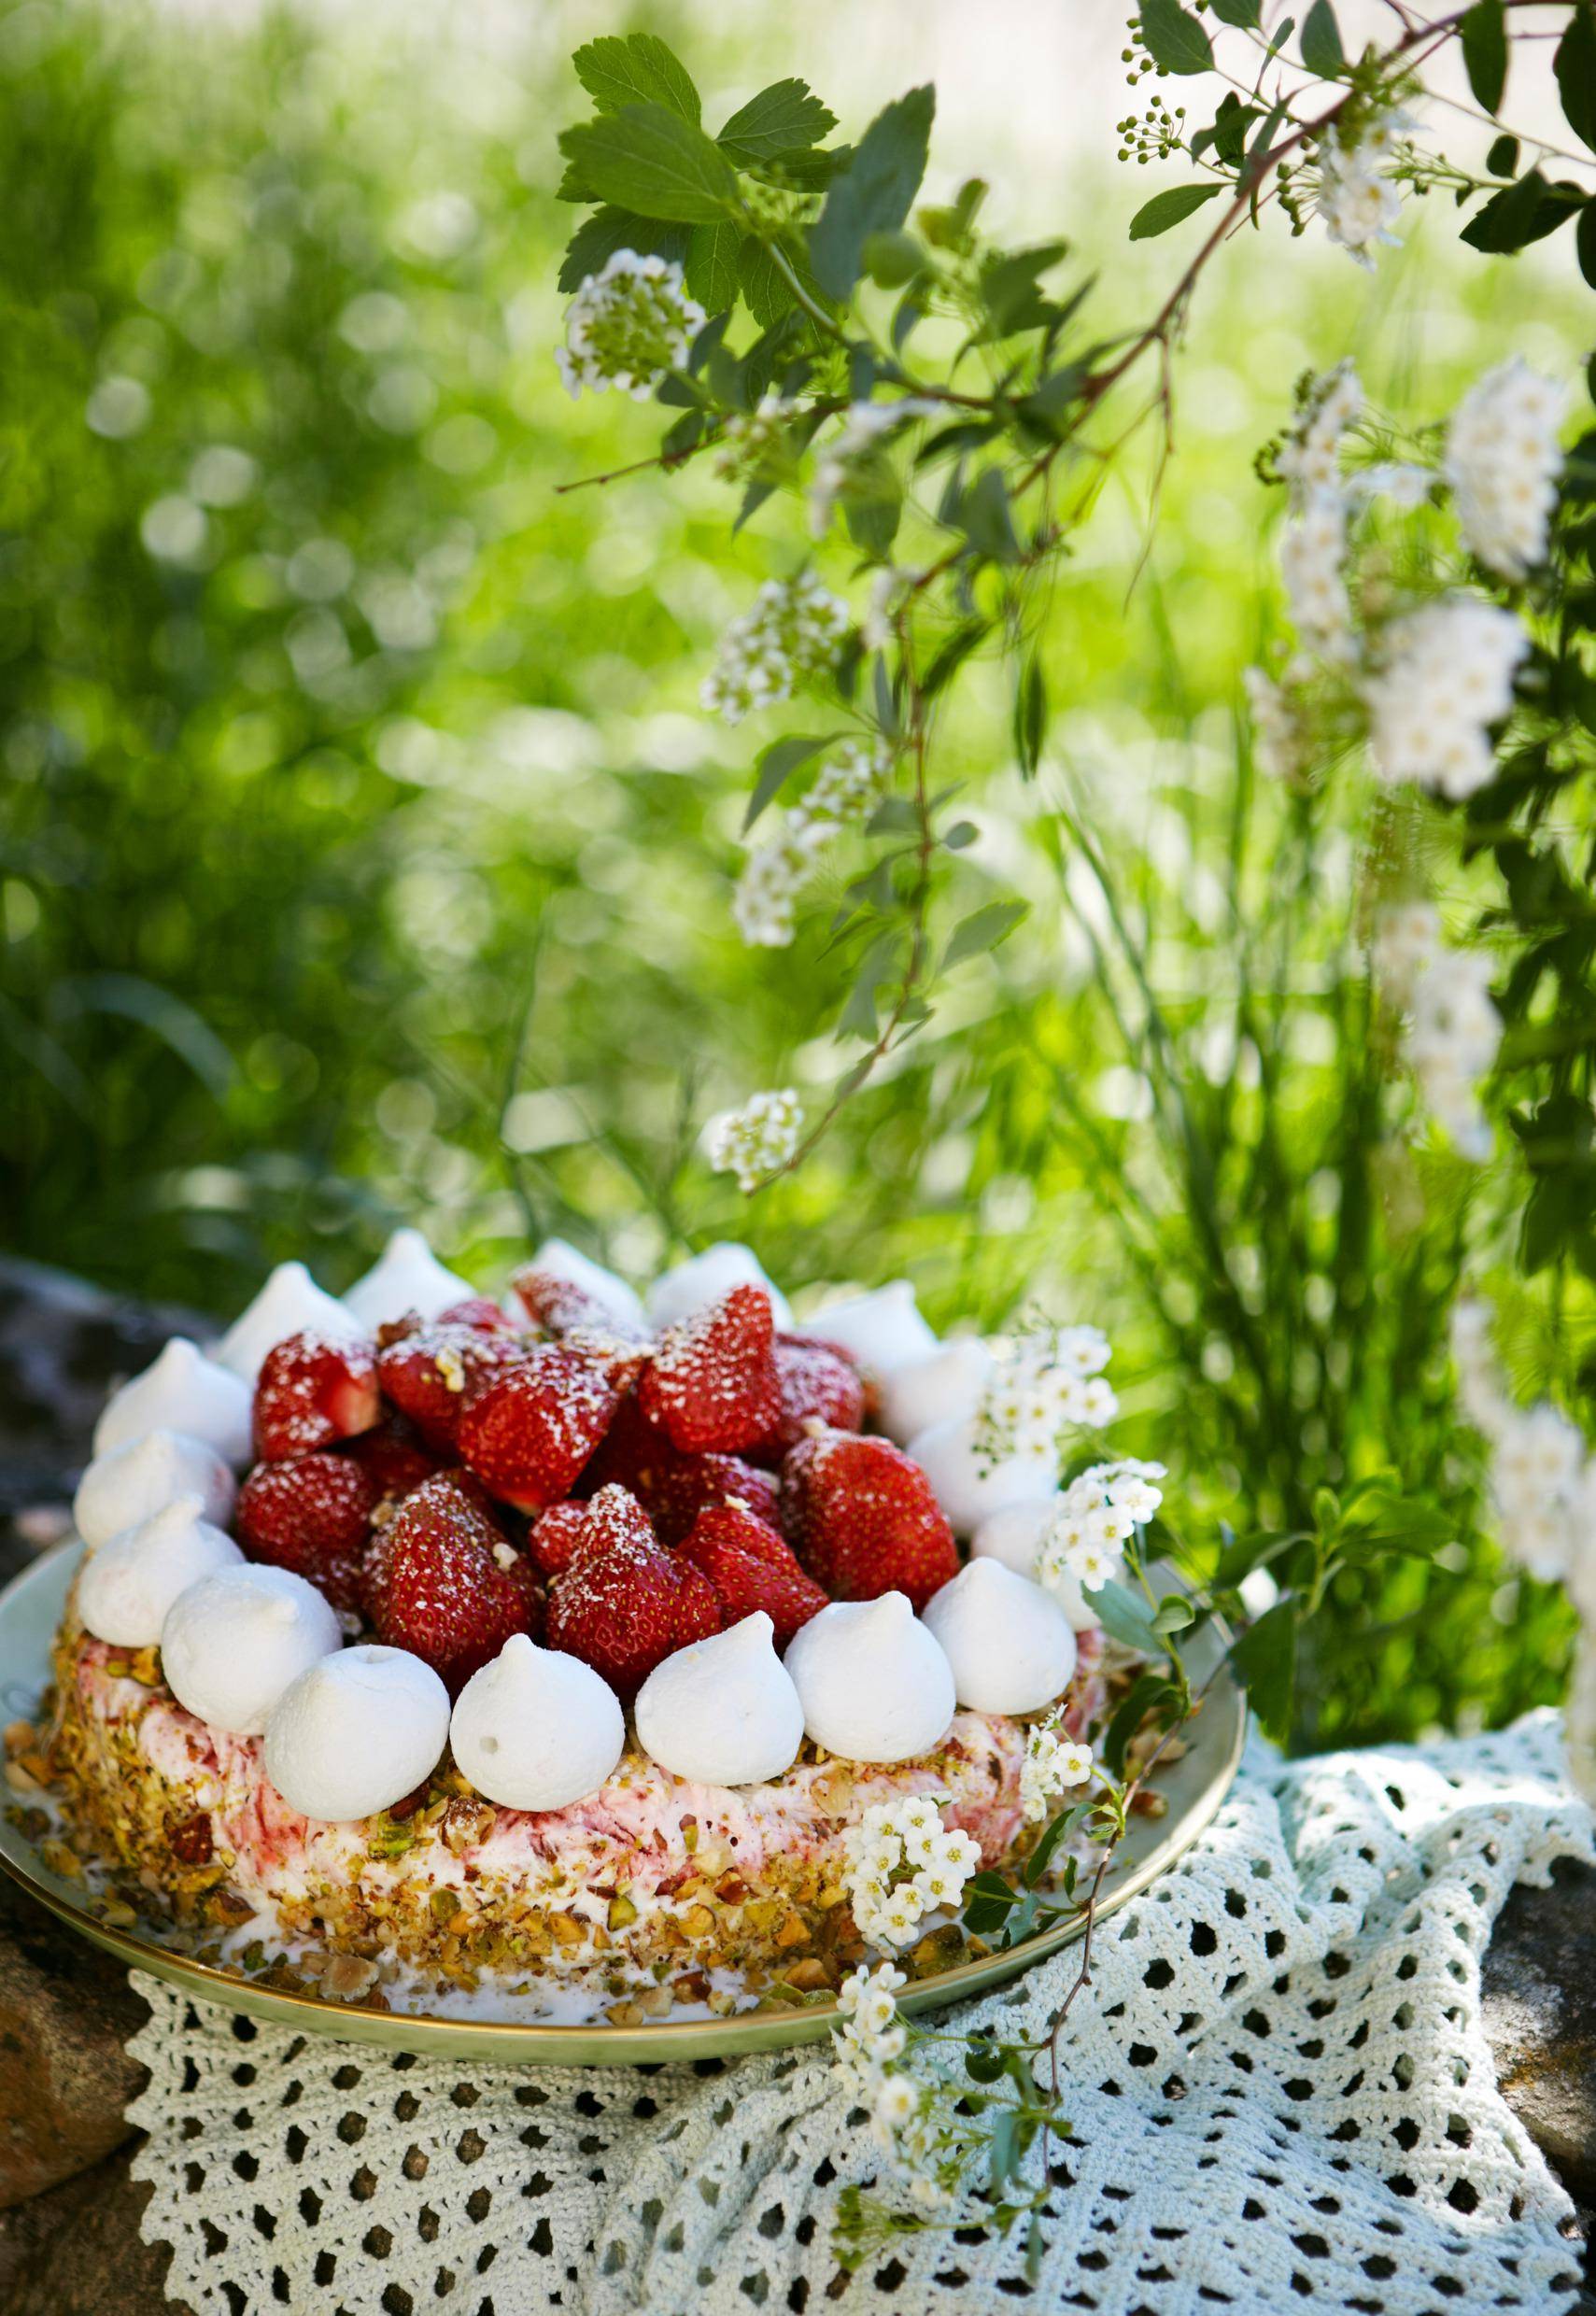 Un gâteau aux fraises est posé sur un chariot avec la nature en arrière-plan.